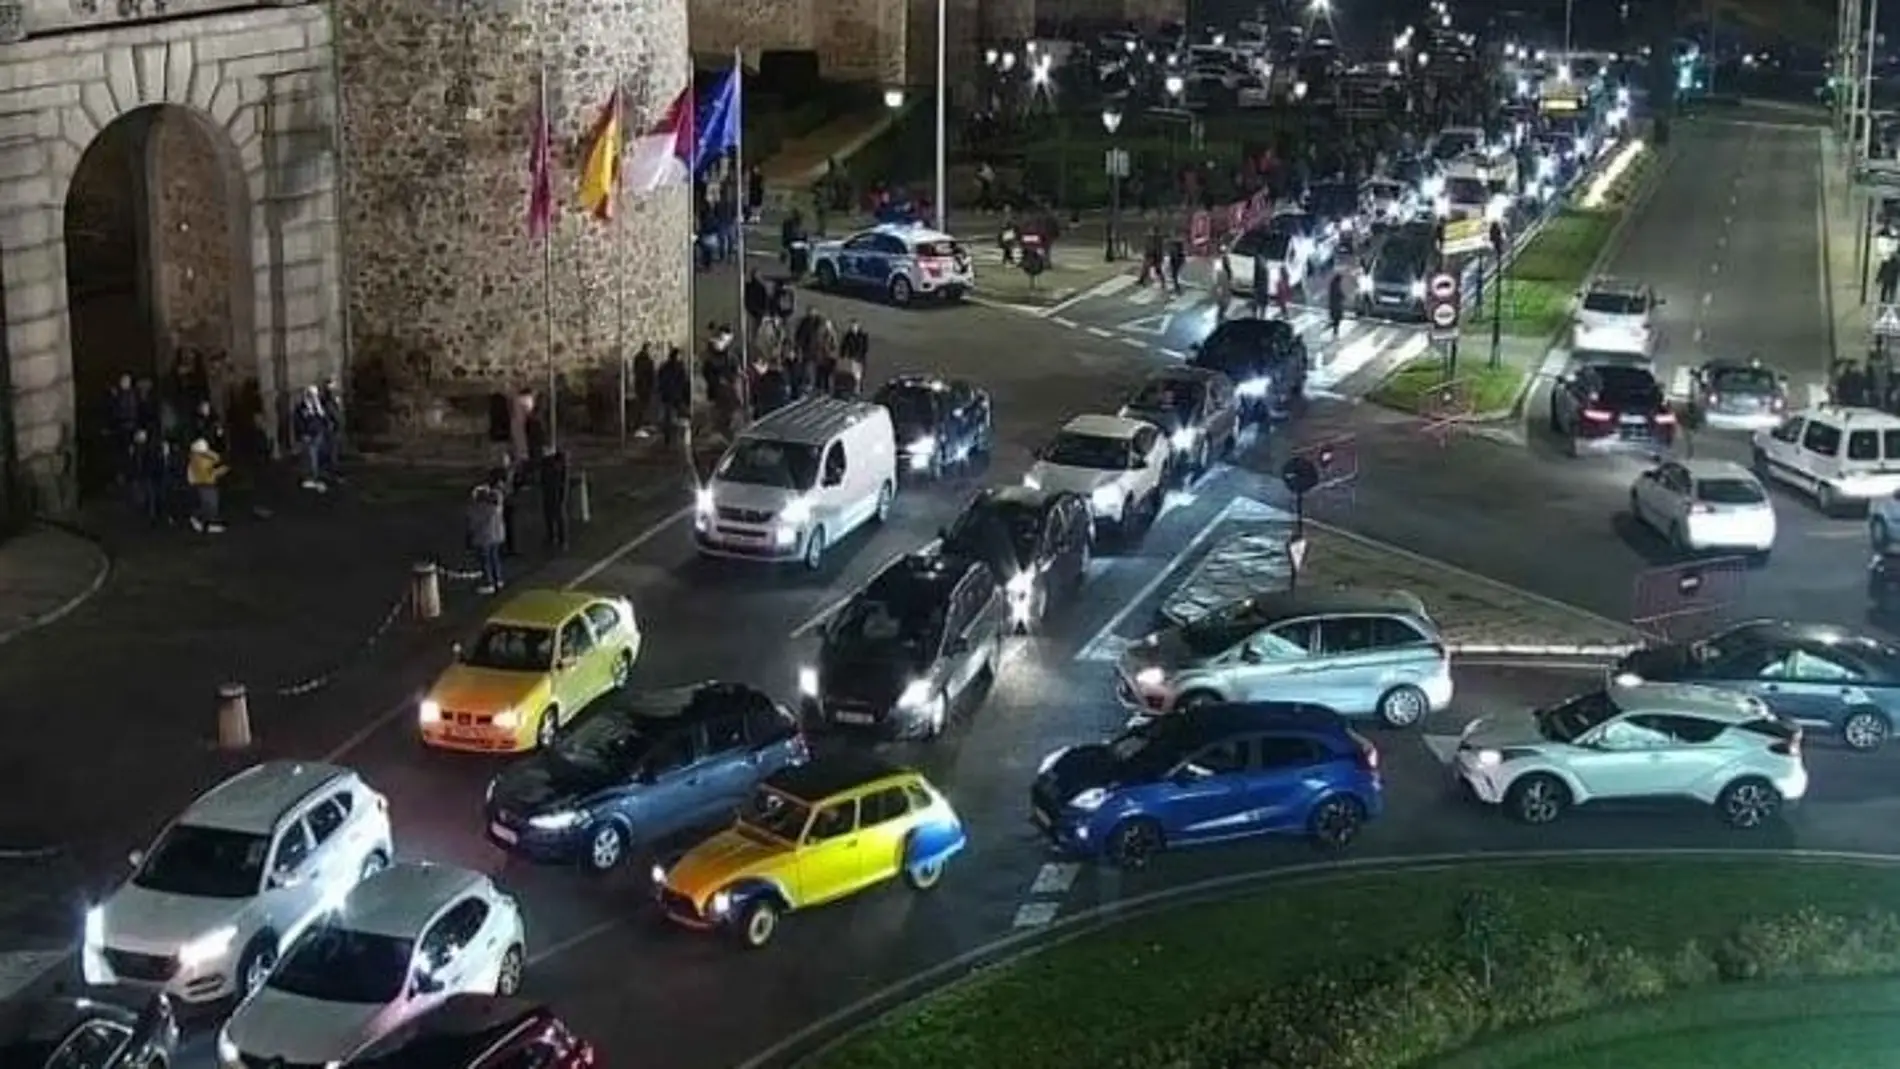 La oposición habla de improvisación y caos en la movilidad durante el puente en Toledo